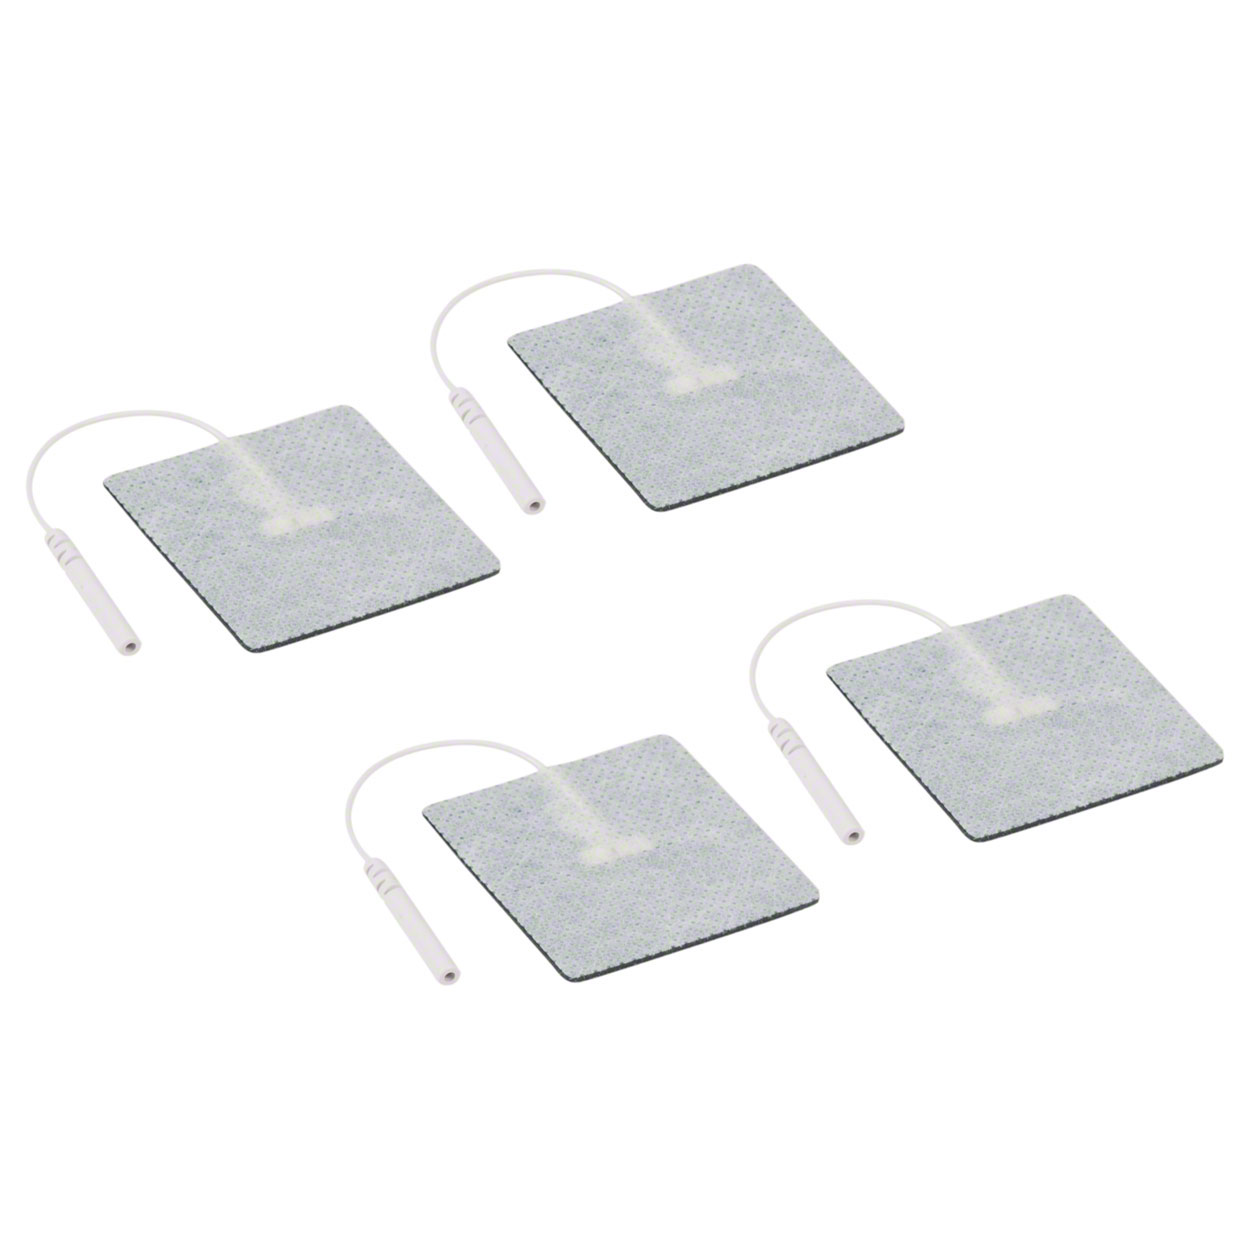 Klebeelektroden Pads für TENS und Reizstrom - 5x5 cm<br> 4 Stück